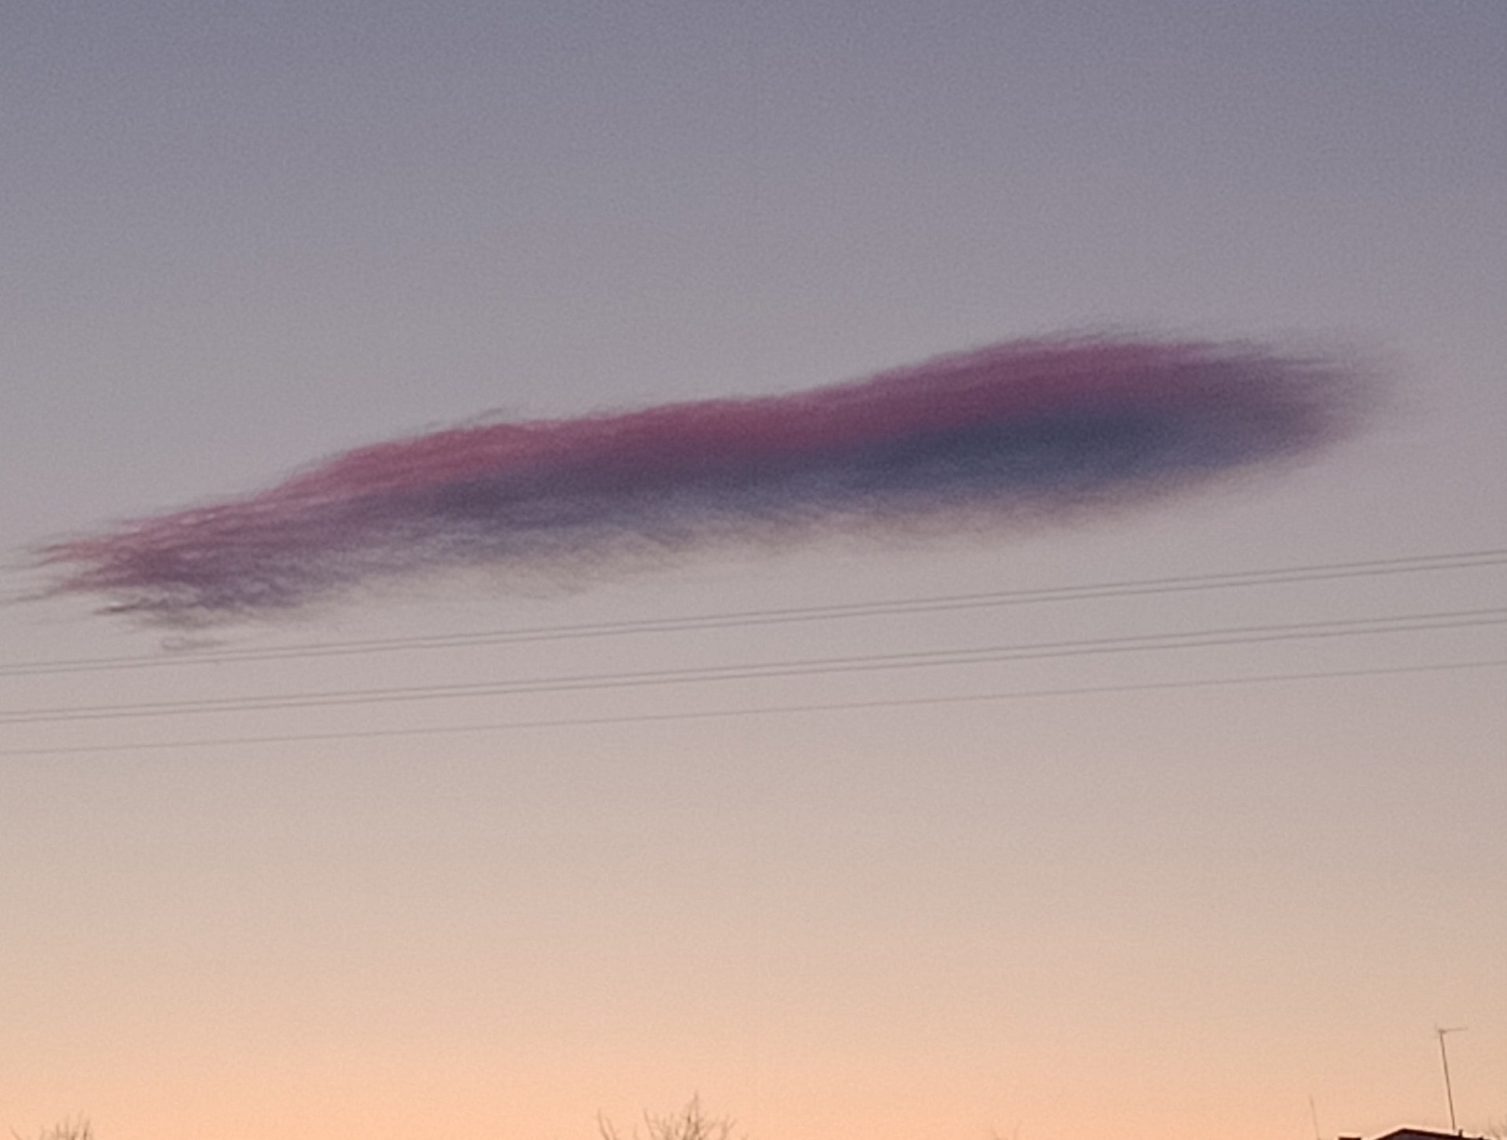 Очень странное облако в Магнитогорске попало на фото. Флаг России на небе увидели жители города